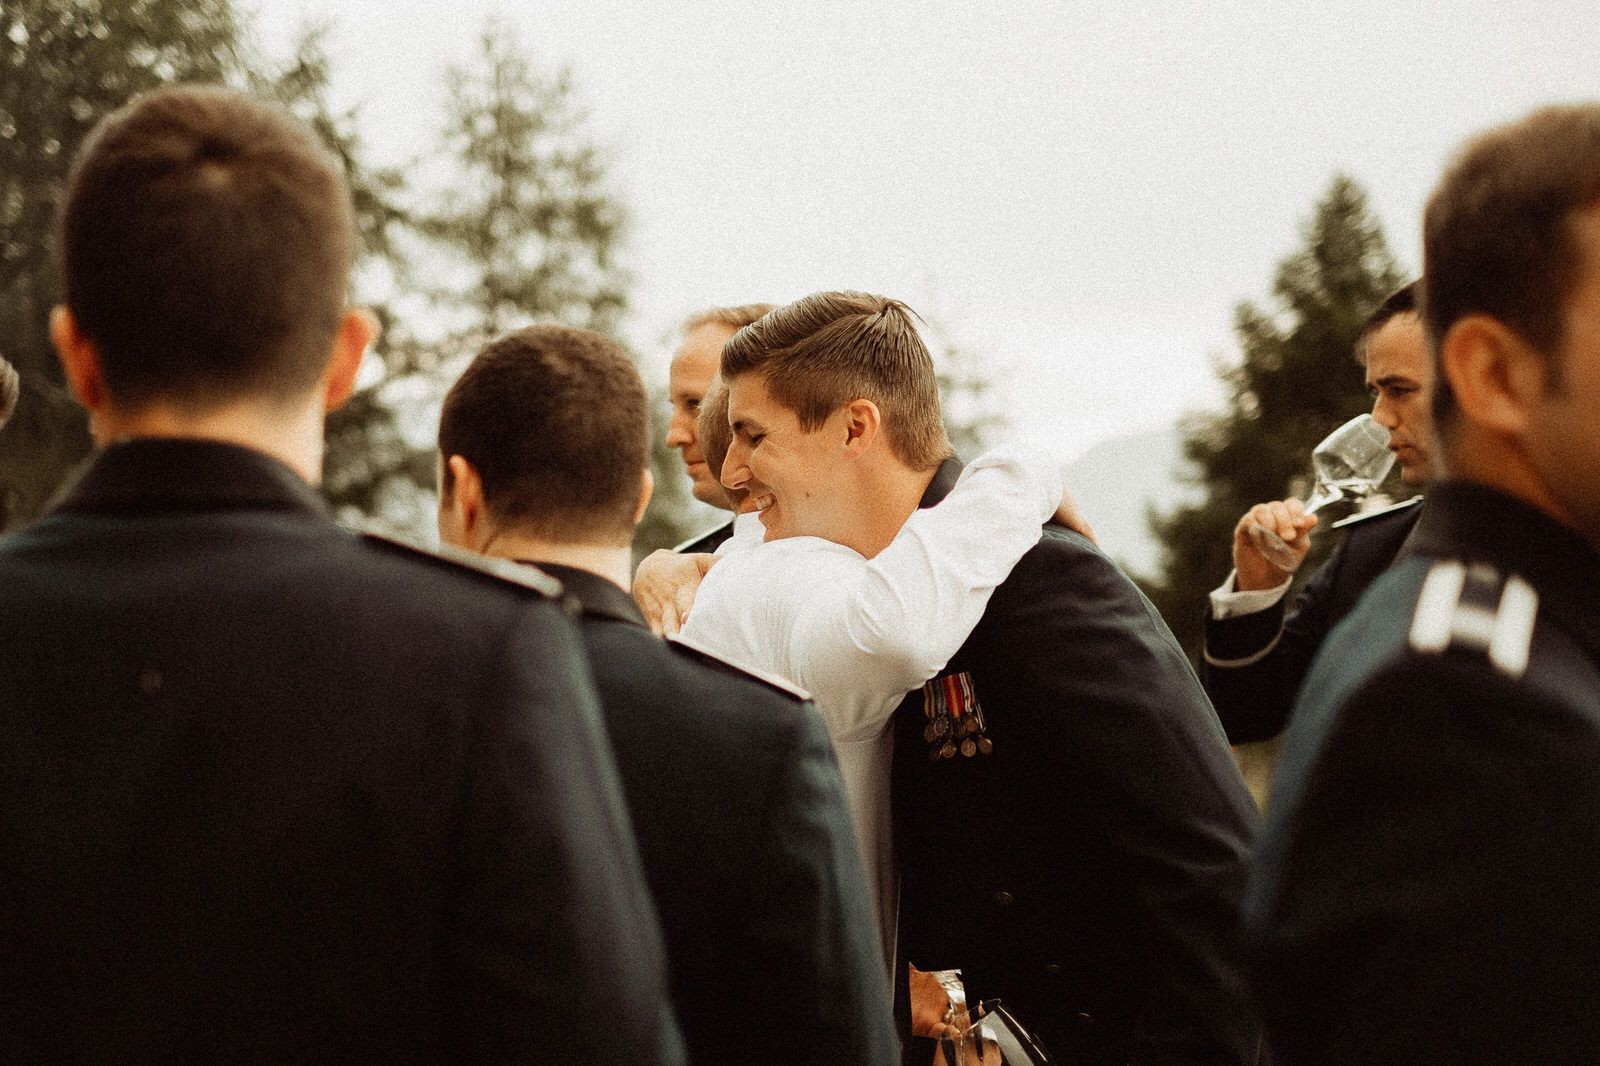 Ceremony - Wedding in the Dolomites, Colfosco, Italy - Italian Apls